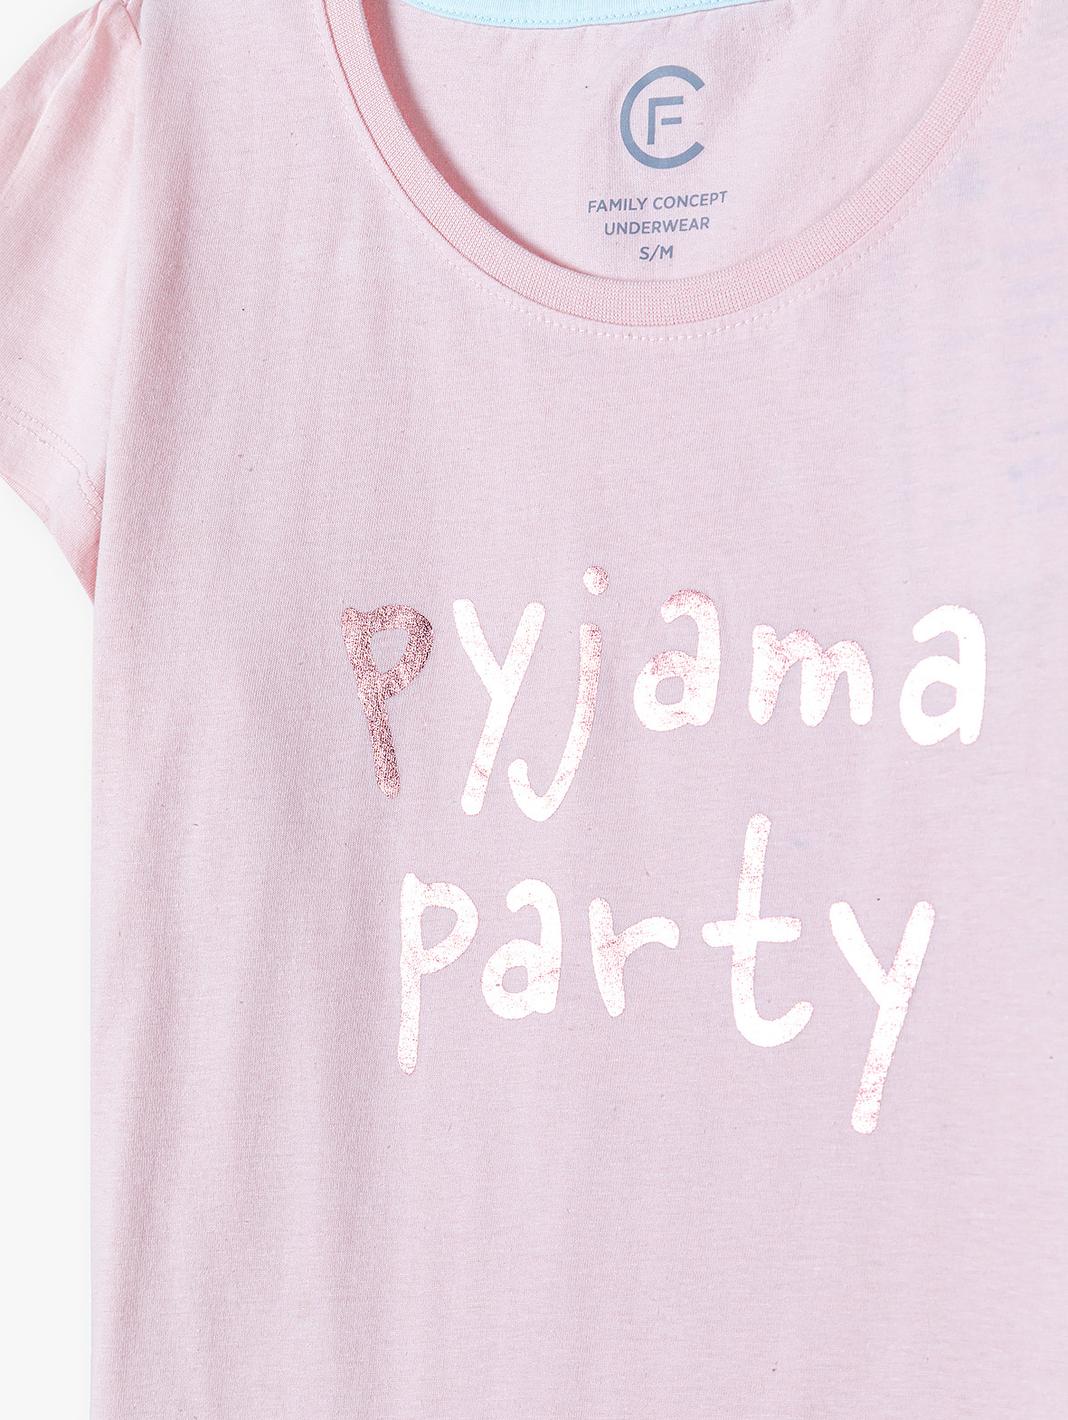 Piżama damska dzianinowa - pyjama party